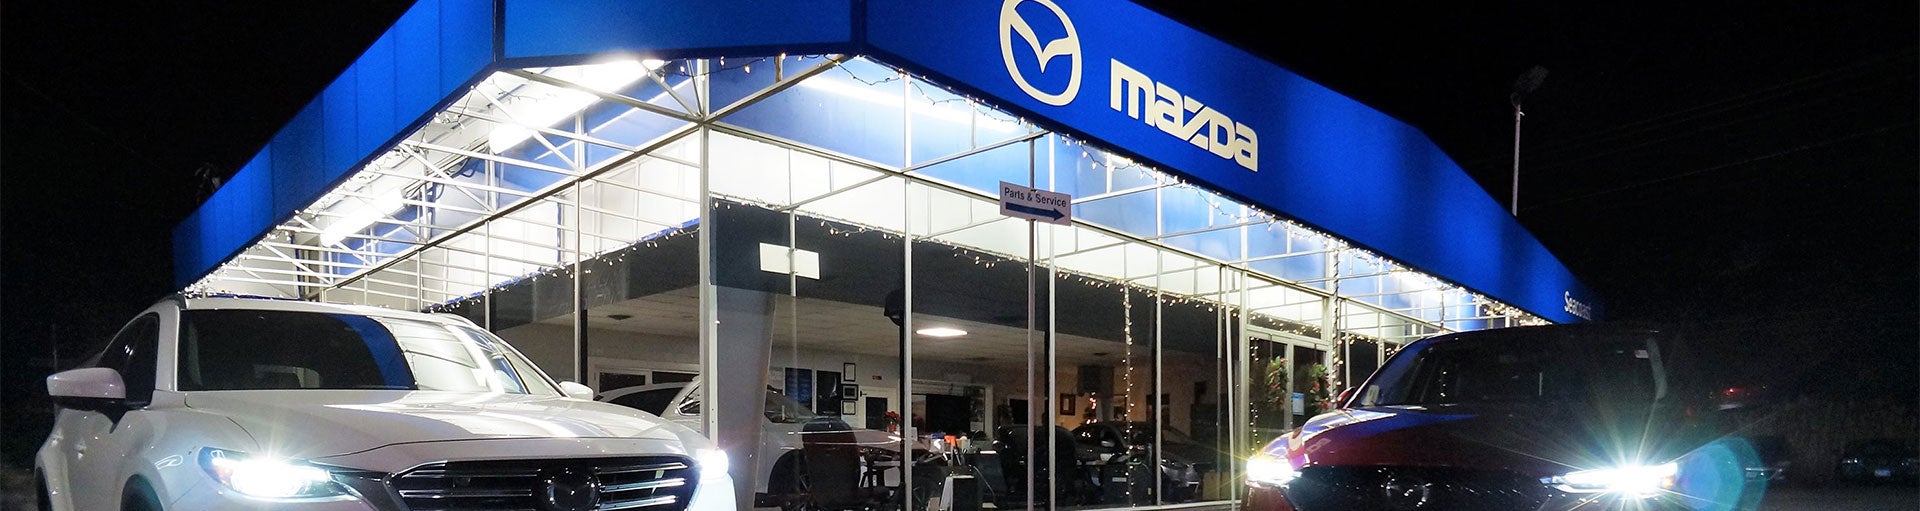 Seacoast Mazda | MAZDA CONVENTIONAL OIL CHANGE SERVICE